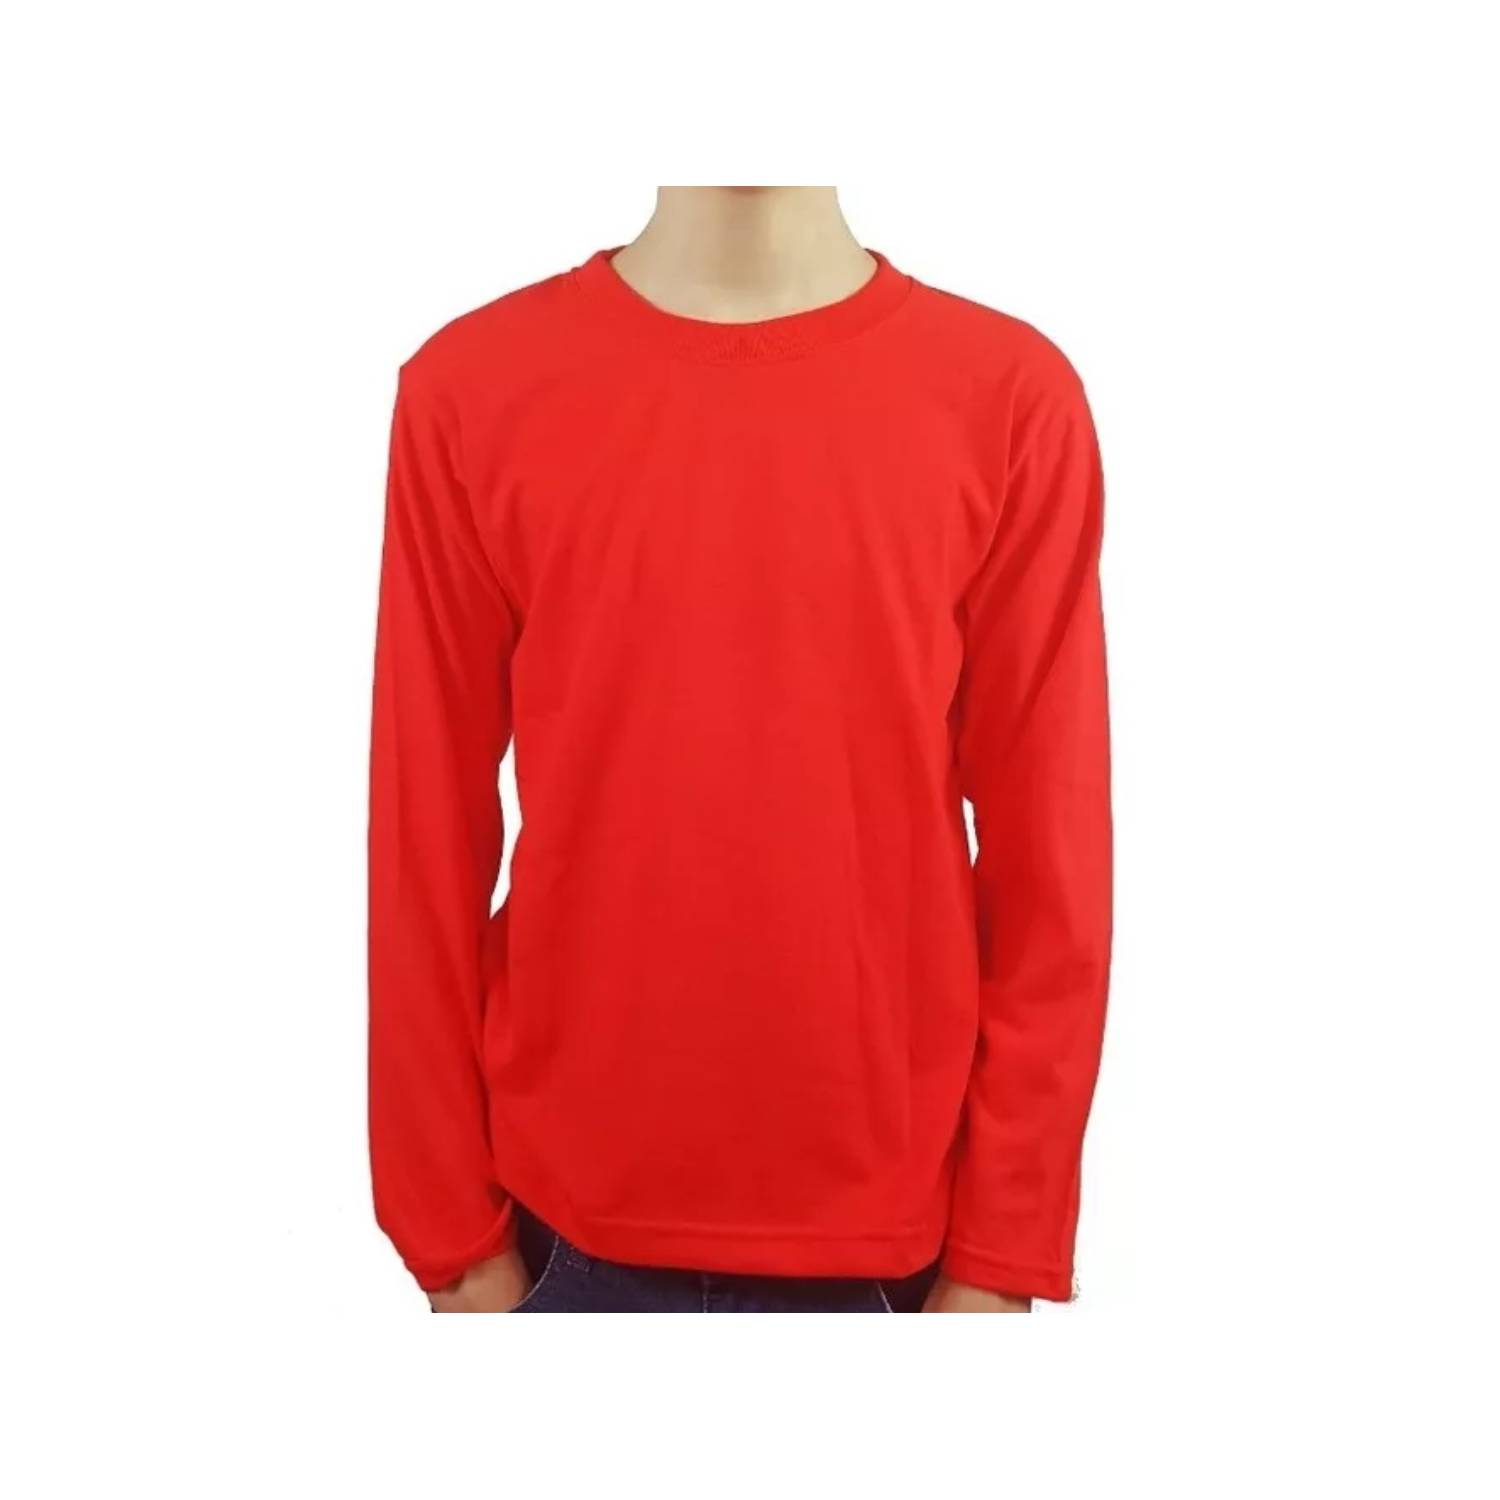 Camiseta roja de algodón manga larga